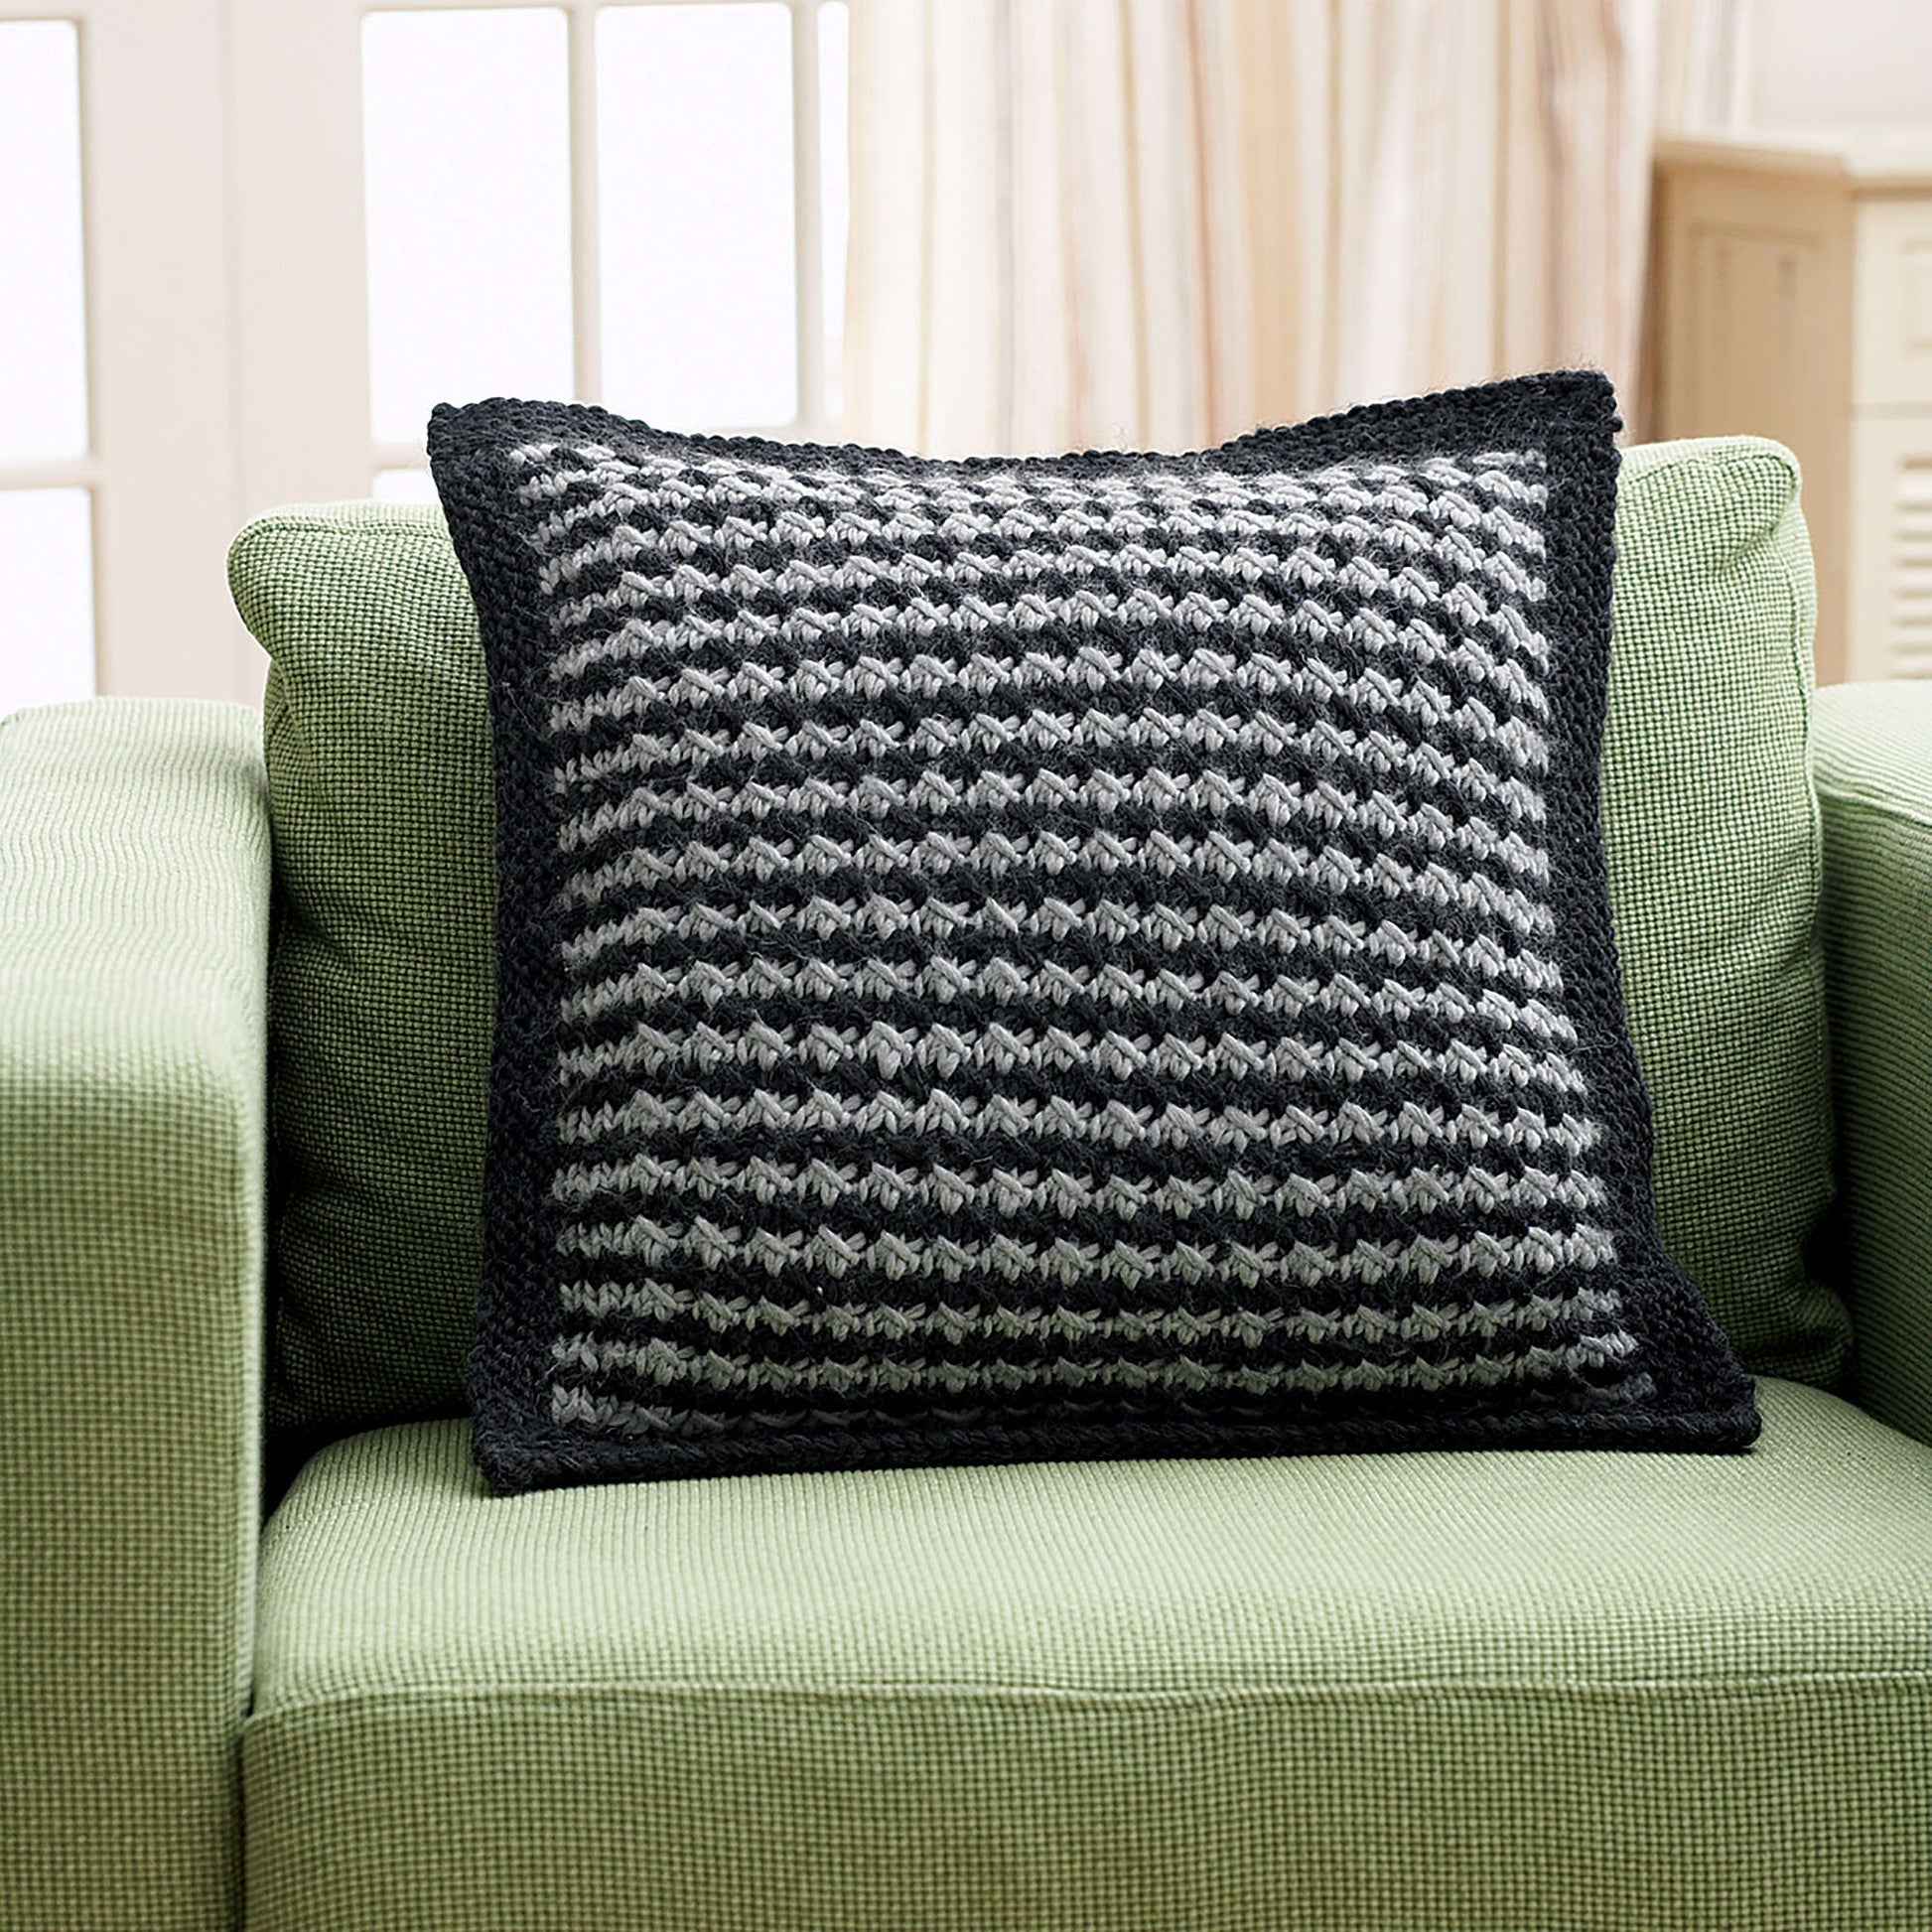 Bernat Houndstooth Pillow Knit Pillow made in Bernat Roving yarn